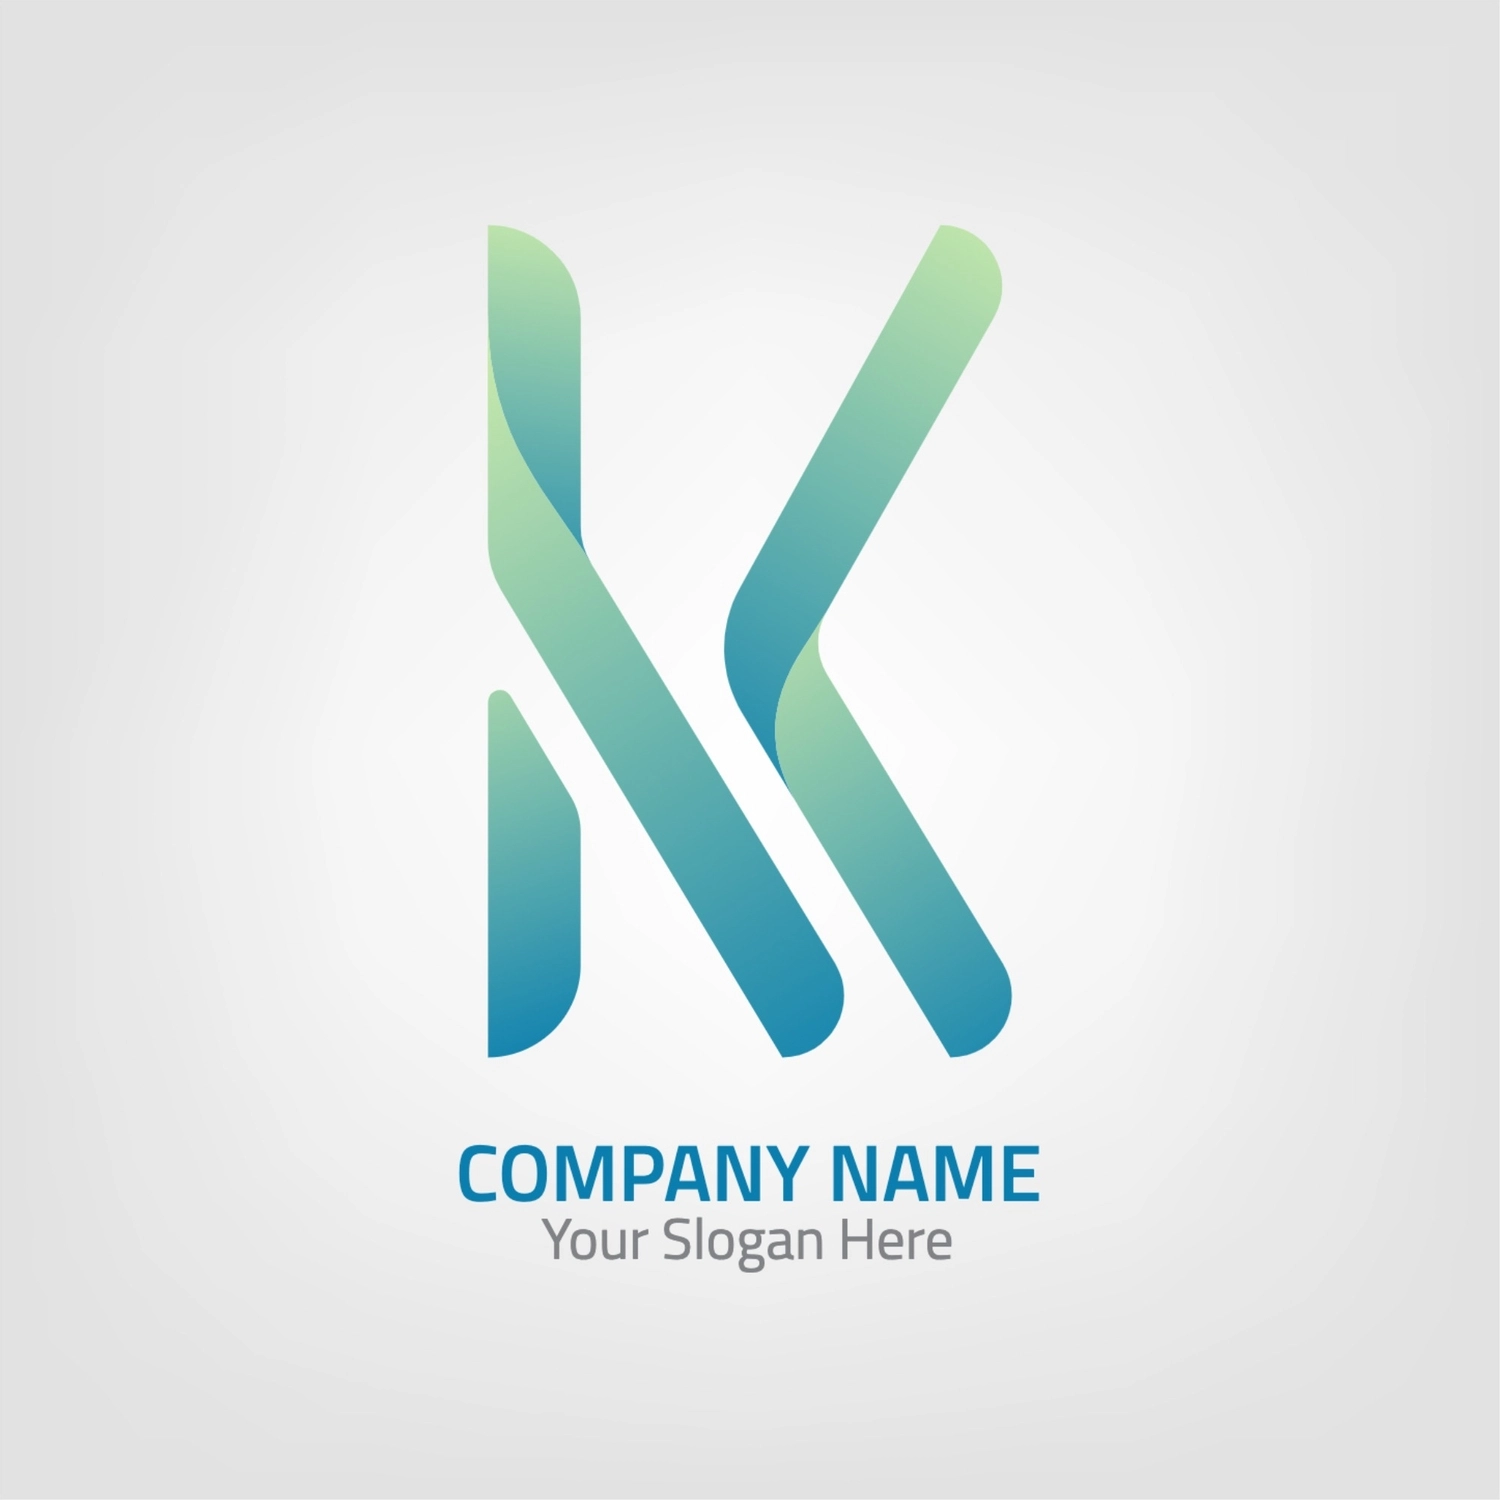 Kのロゴ, イニシャル, 作成, デザイン, ロゴテンプレート